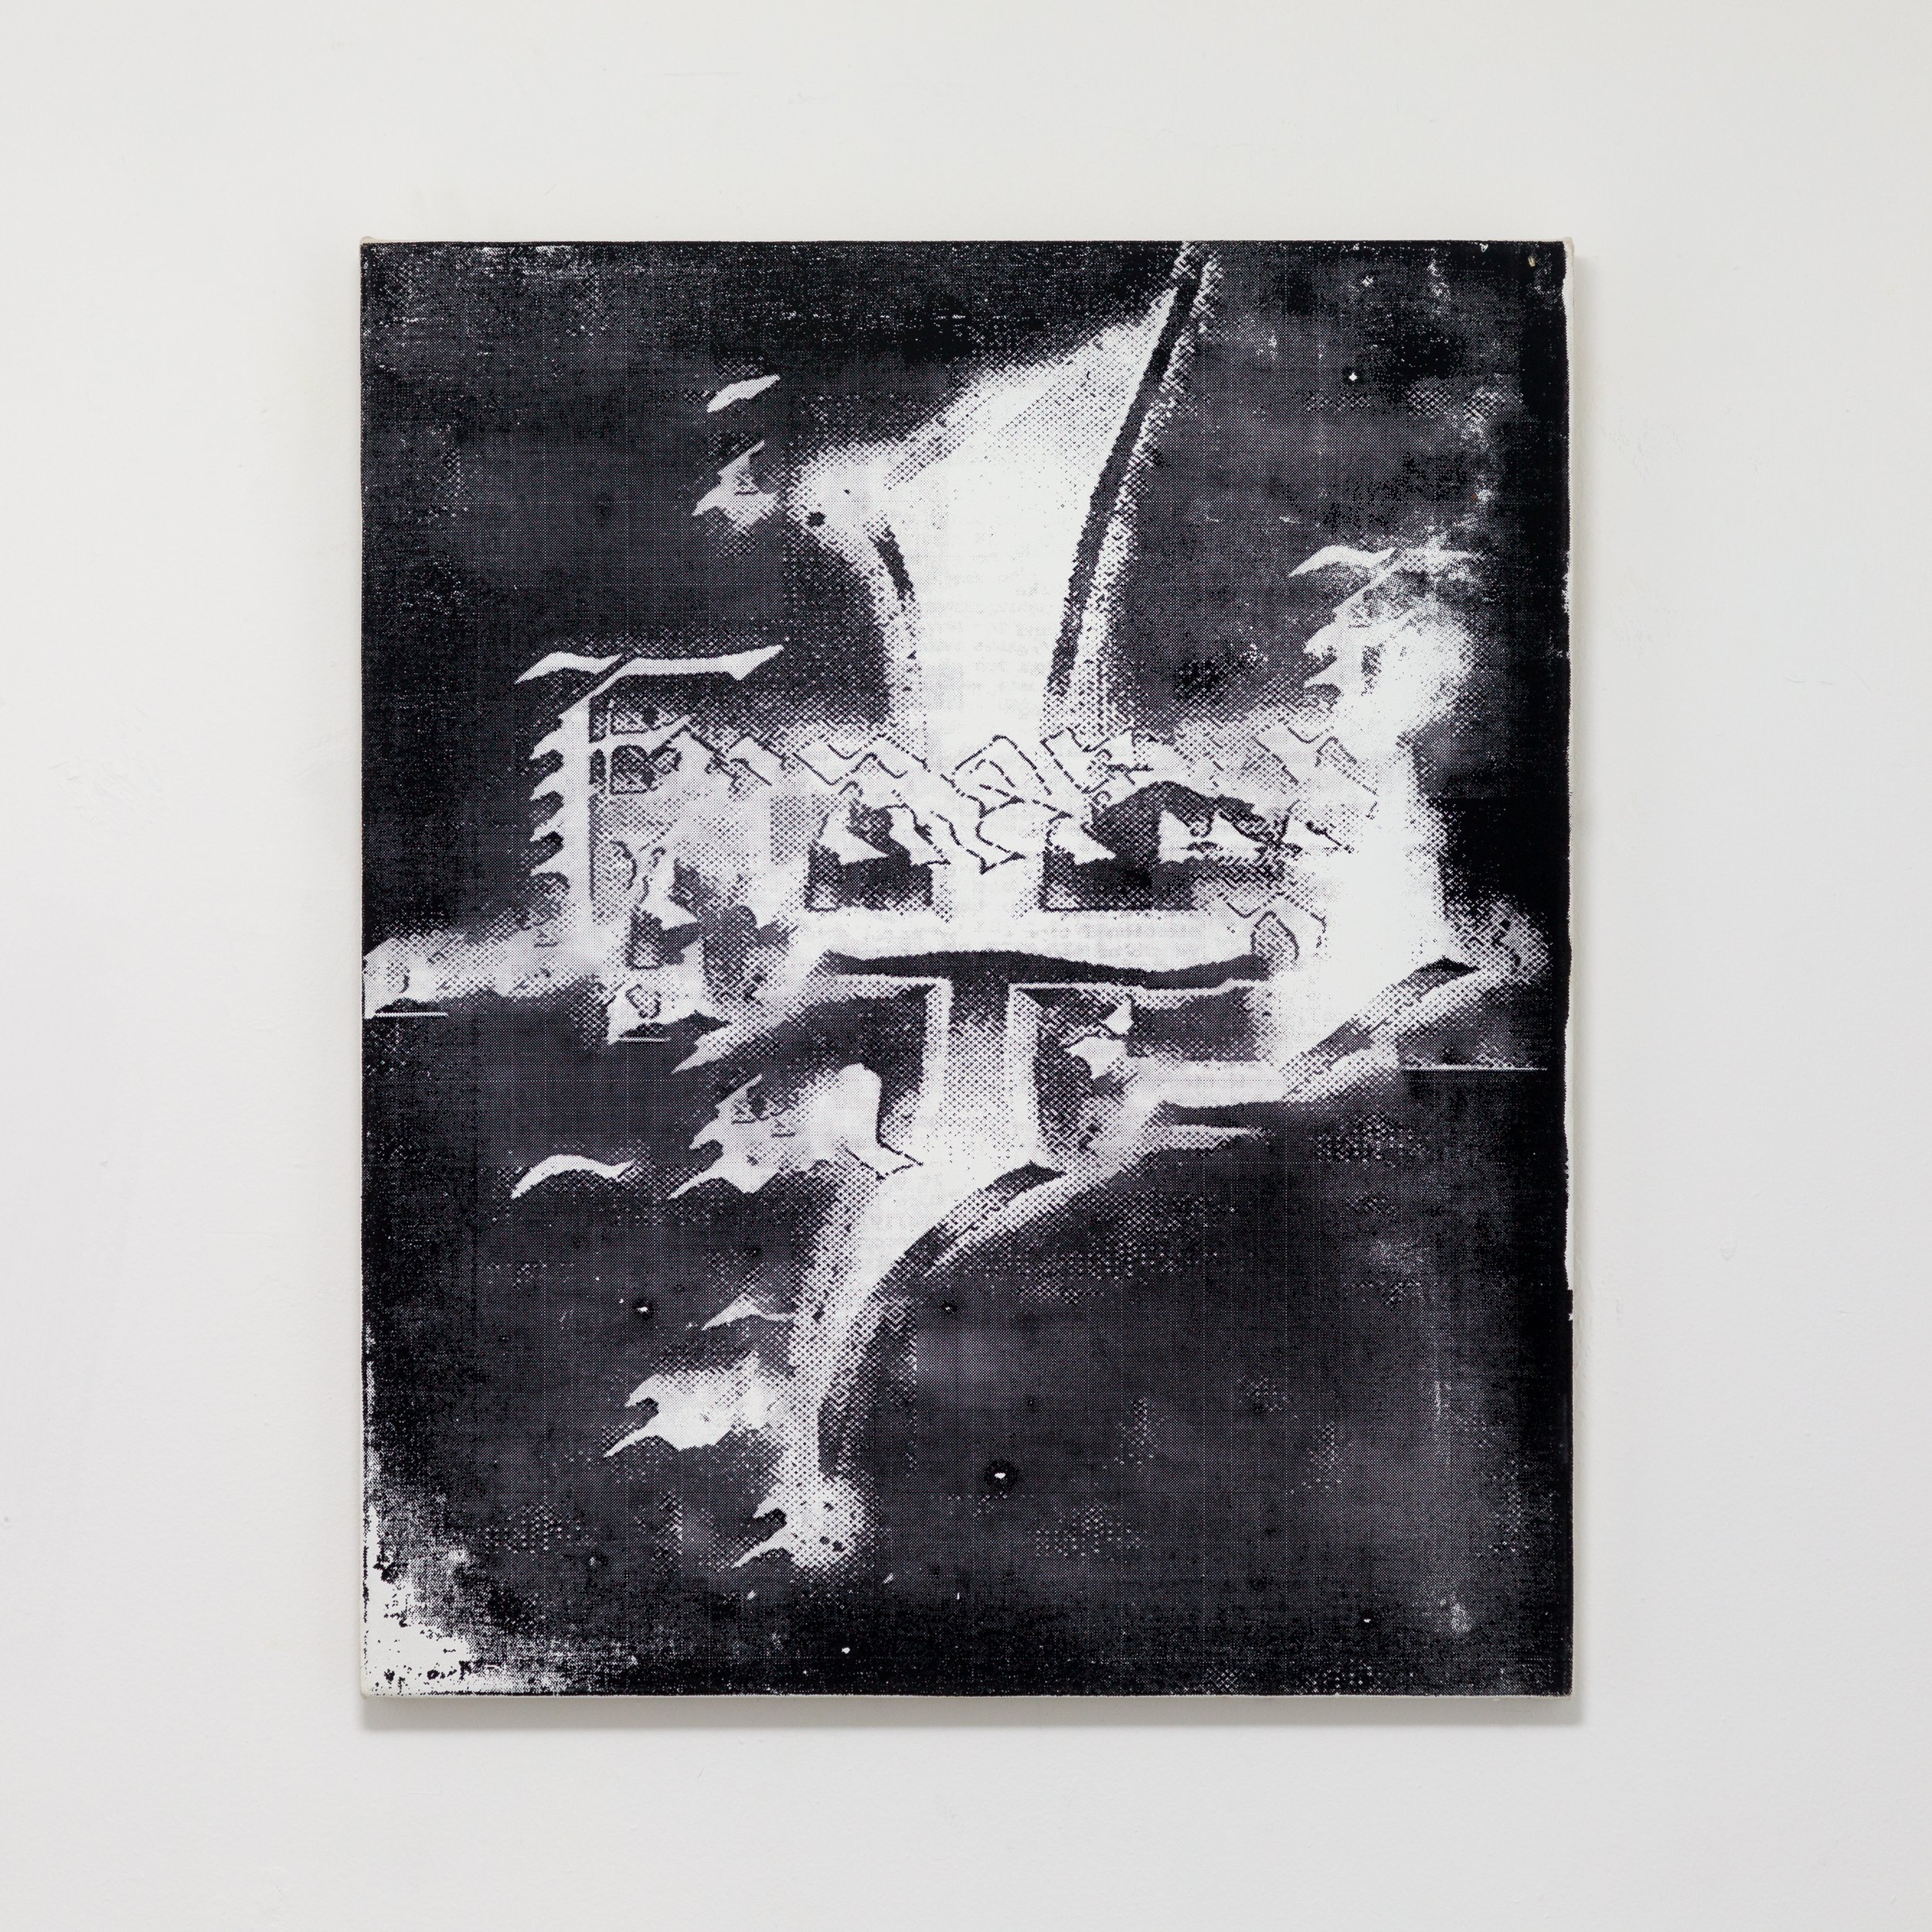   AJ Kahn,   Sewn Patch , 2022, Silkscreen on canvas, 20 x 24 in, 50.8 x 61 cm 